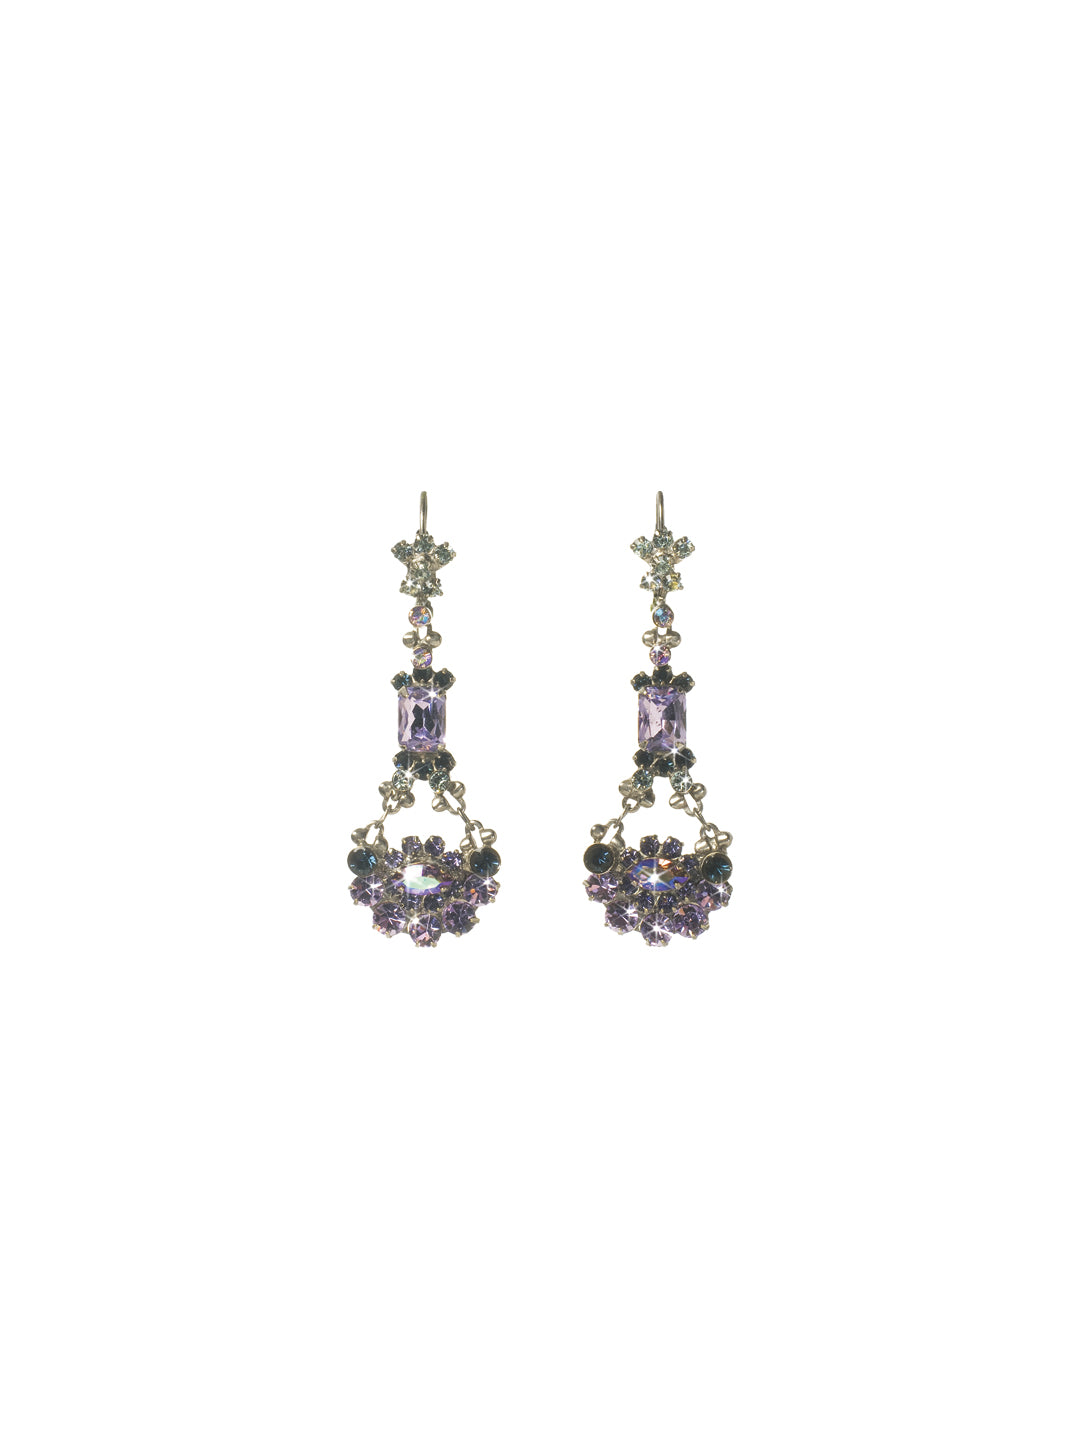 Crystal French Wire Earrings Dangle Earrings - EBT10ASHY